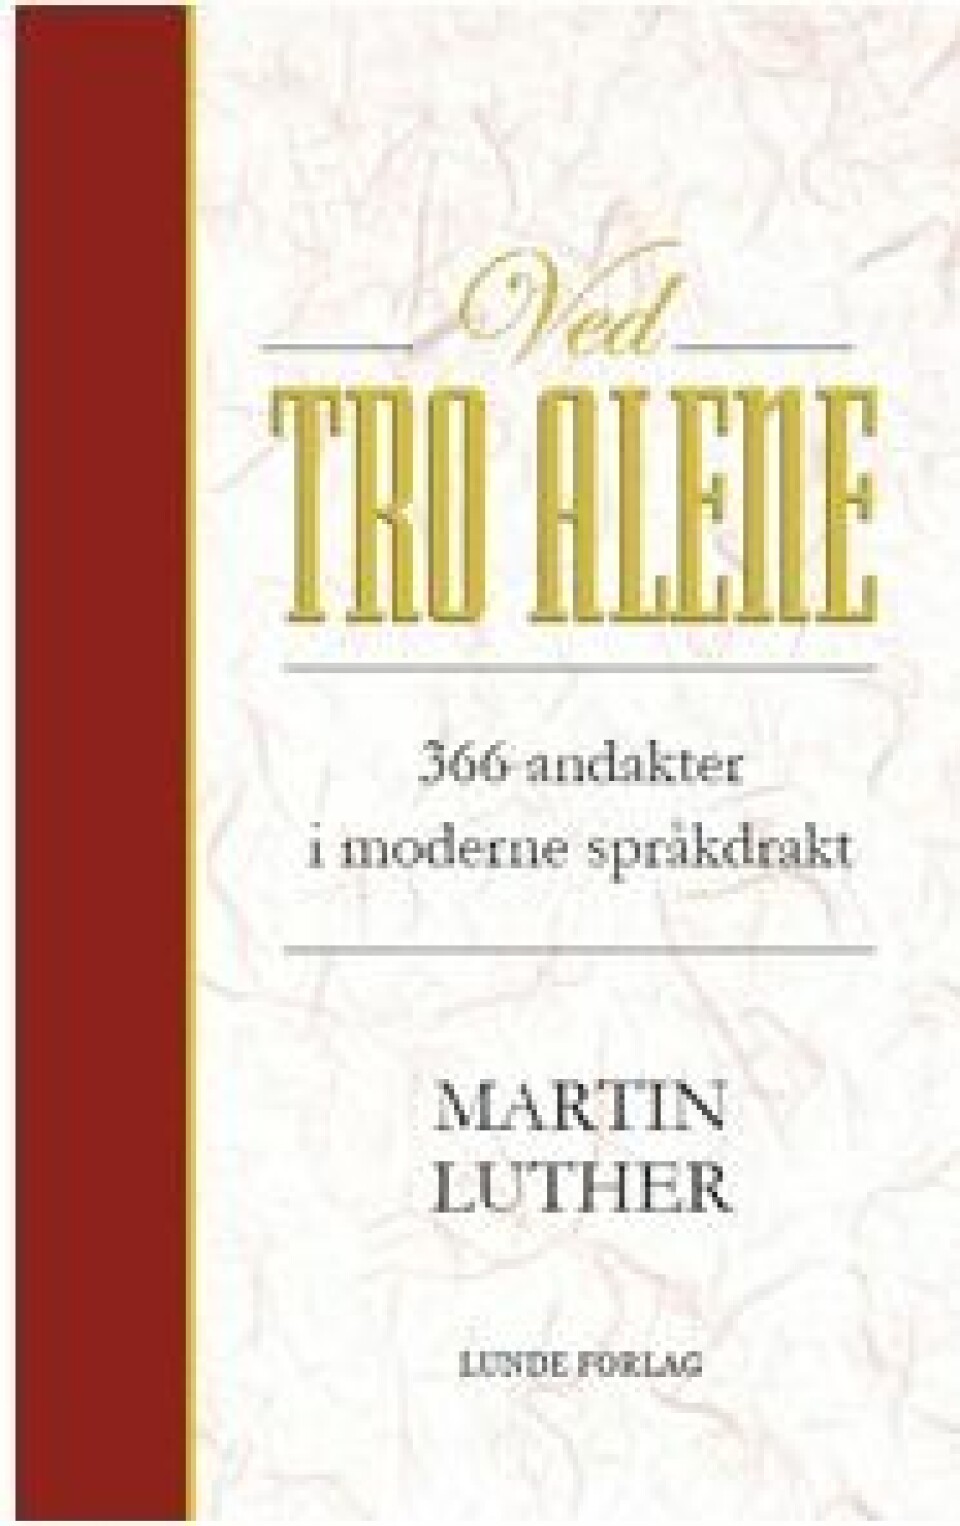 Boken «Ved tro alene» er utgitt av Lunde Forlag nå i 2017. Den inneholder et utvalg tekster av Martin Luther. At frelsen er gratis og mottas ved tro alene, er fortsatt viktig for protestanter i Norge.